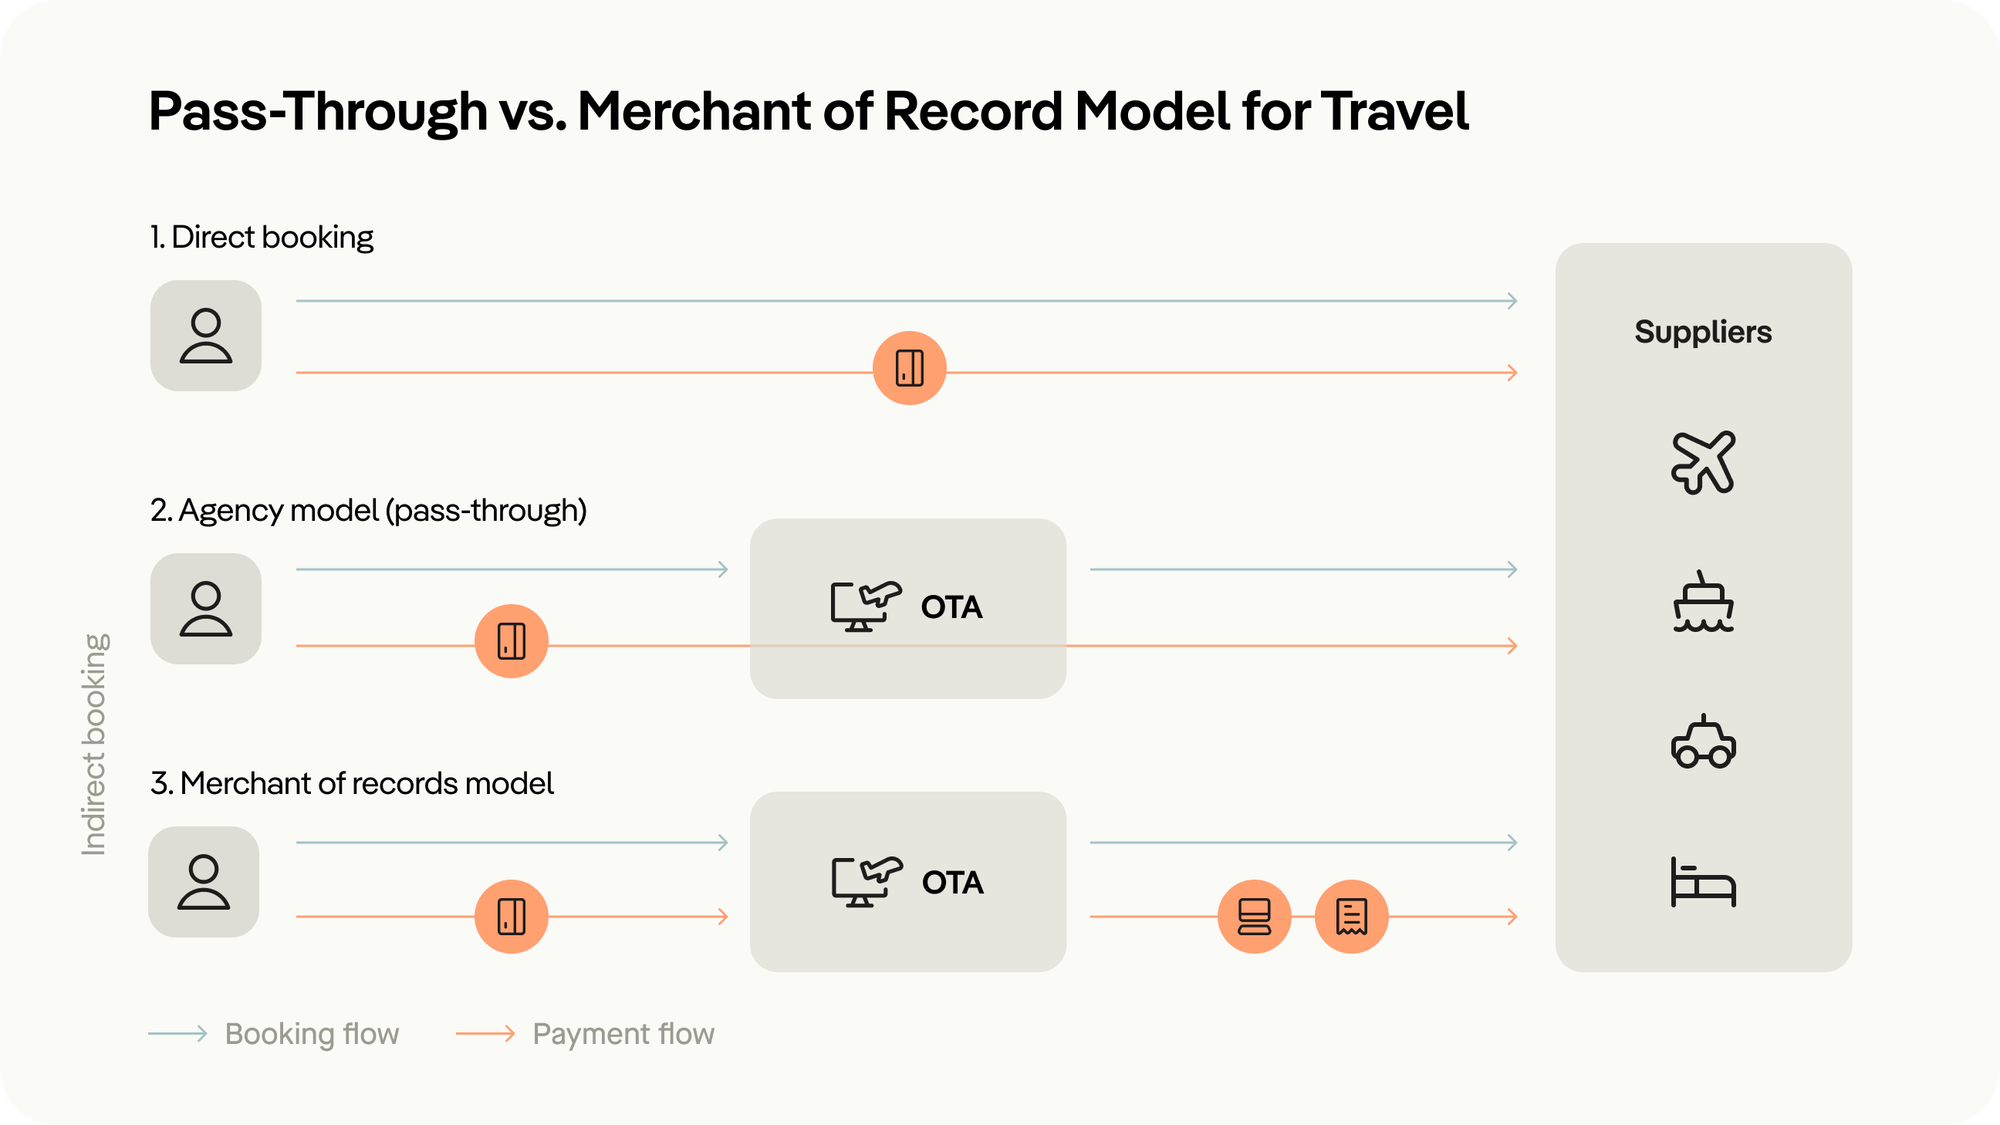 Pass-Through vs. MoR Model for Travel